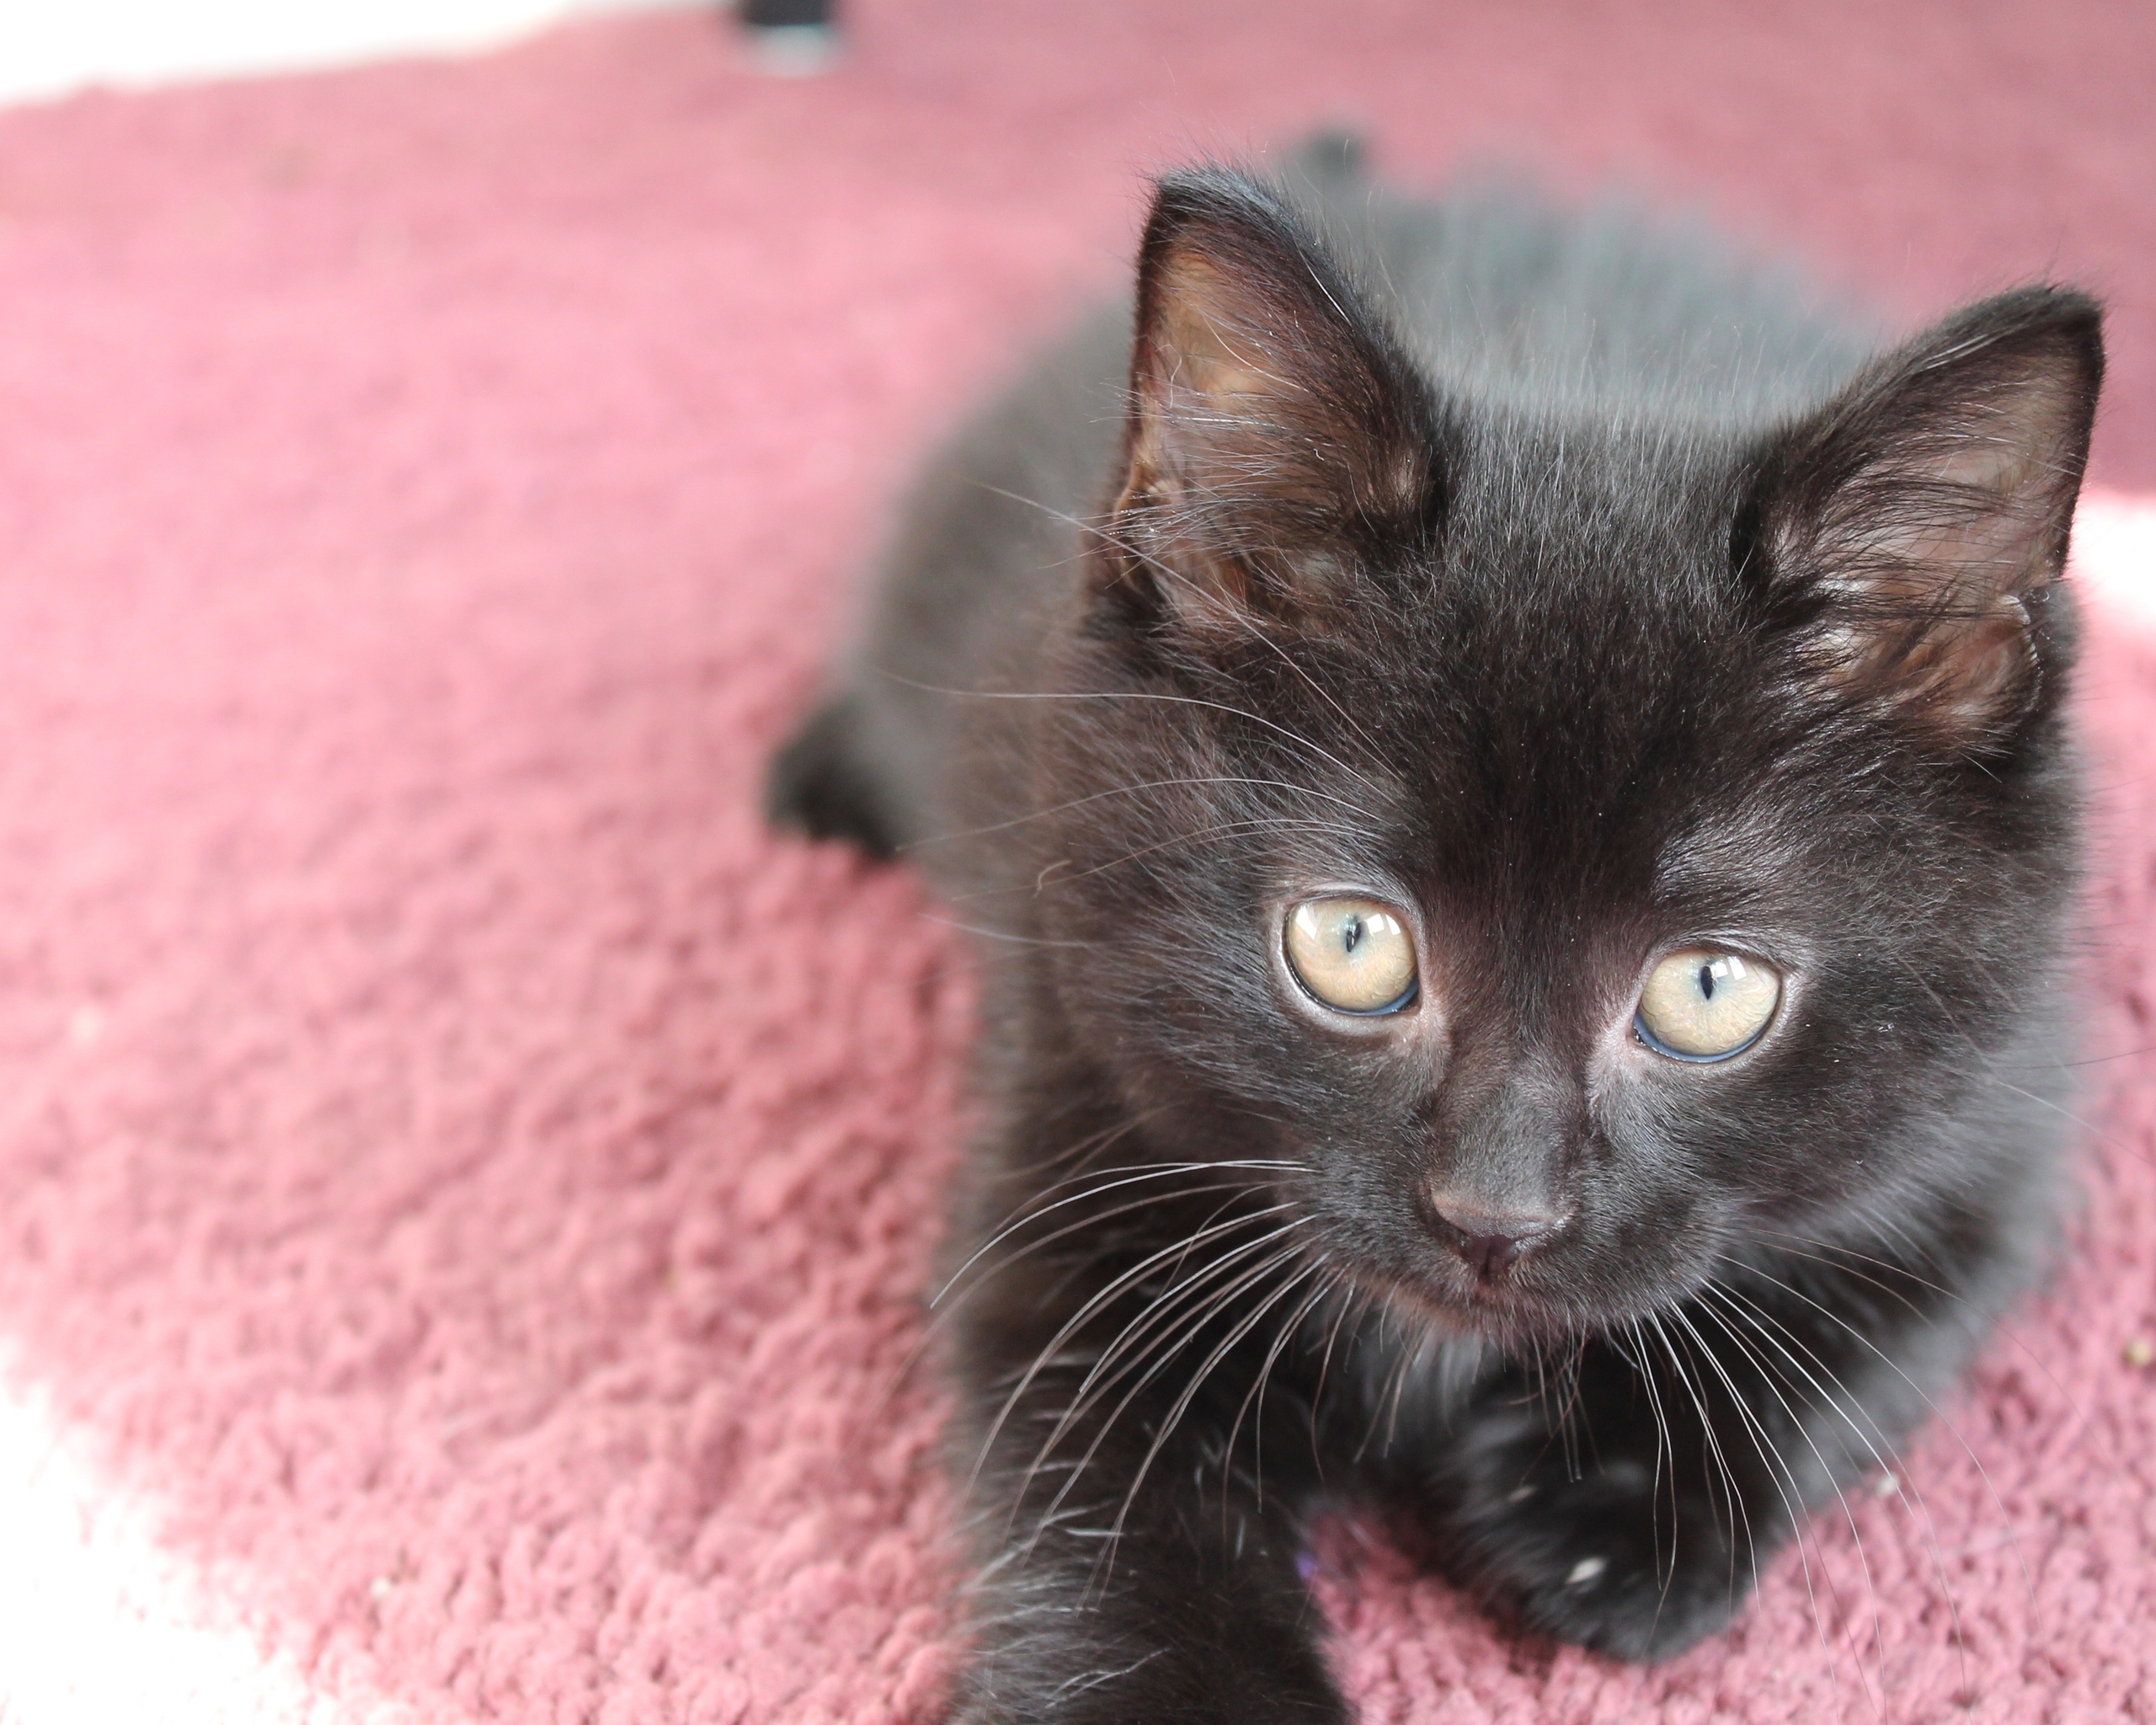 Image: Kitten, cat, black, lying, carpet